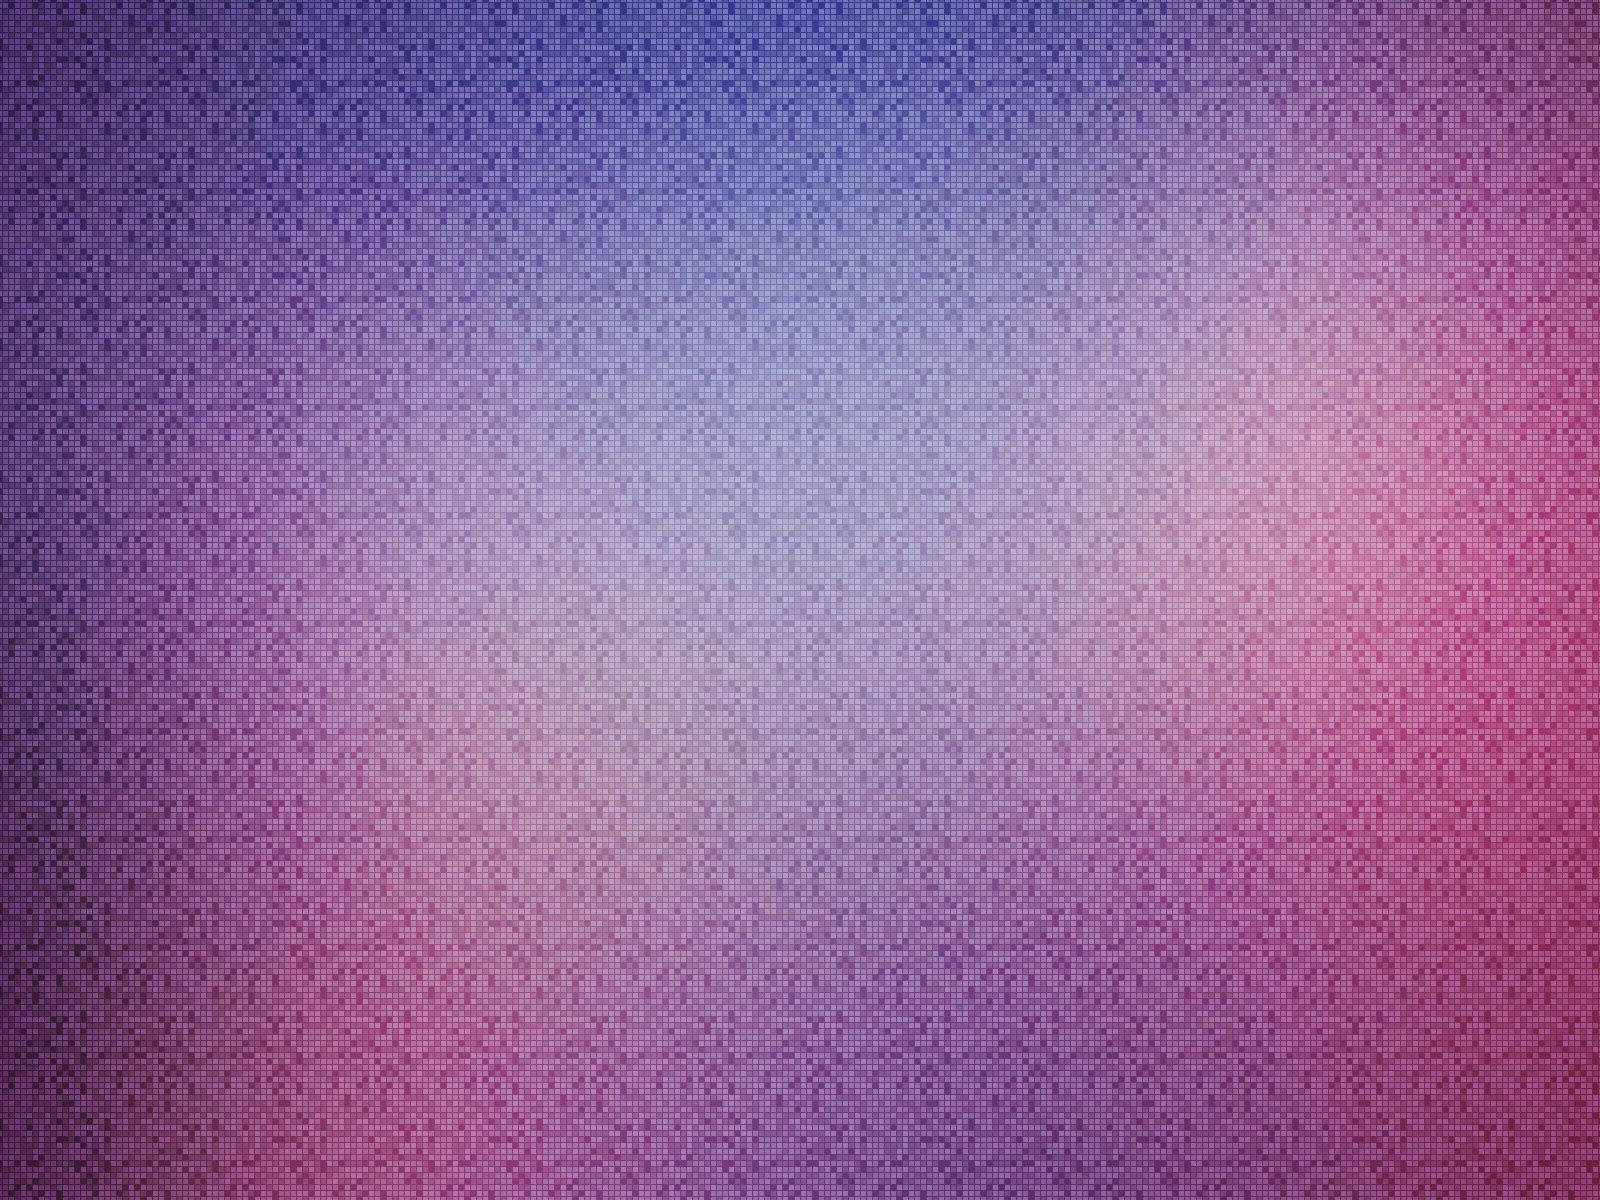 Purple-pink Pixel Gradient Wallpaper